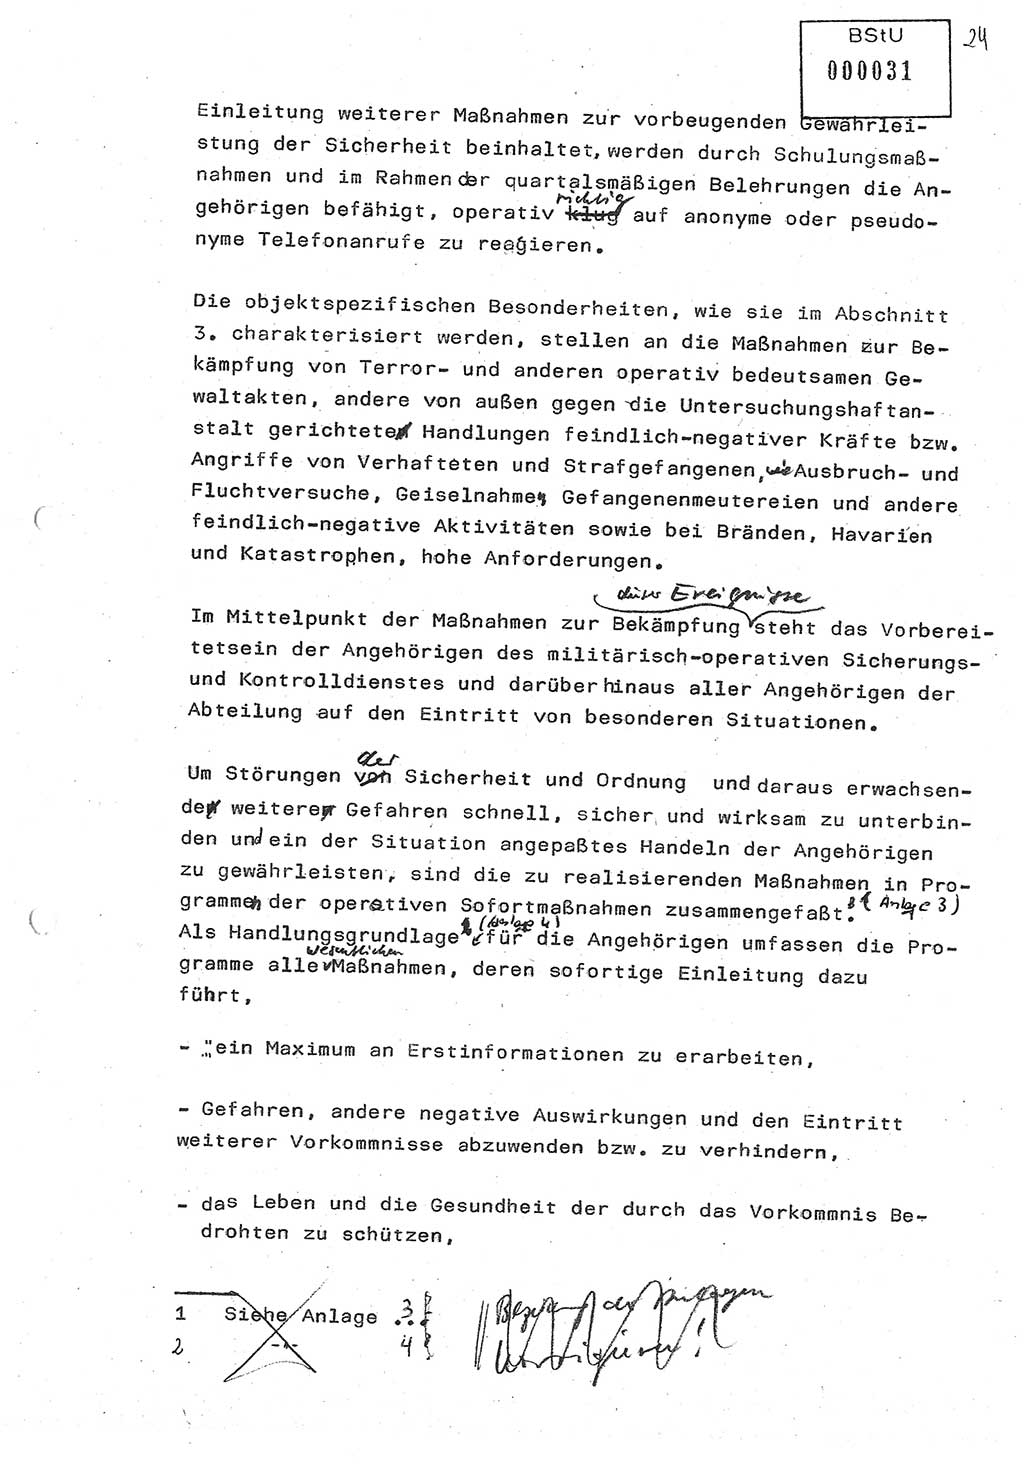 Diplomarbeit (Entwurf) Oberleutnant Peter Parke (Abt. ⅩⅣ), Ministerium für Staatssicherheit (MfS) [Deutsche Demokratische Republik (DDR)], Juristische Hochschule (JHS), Geheime Verschlußsache (GVS) o001-98/86, Potsdam 1986, Seite 31 (Dipl.-Arb. MfS DDR JHS GVS o001-98/86 1986, S. 31)